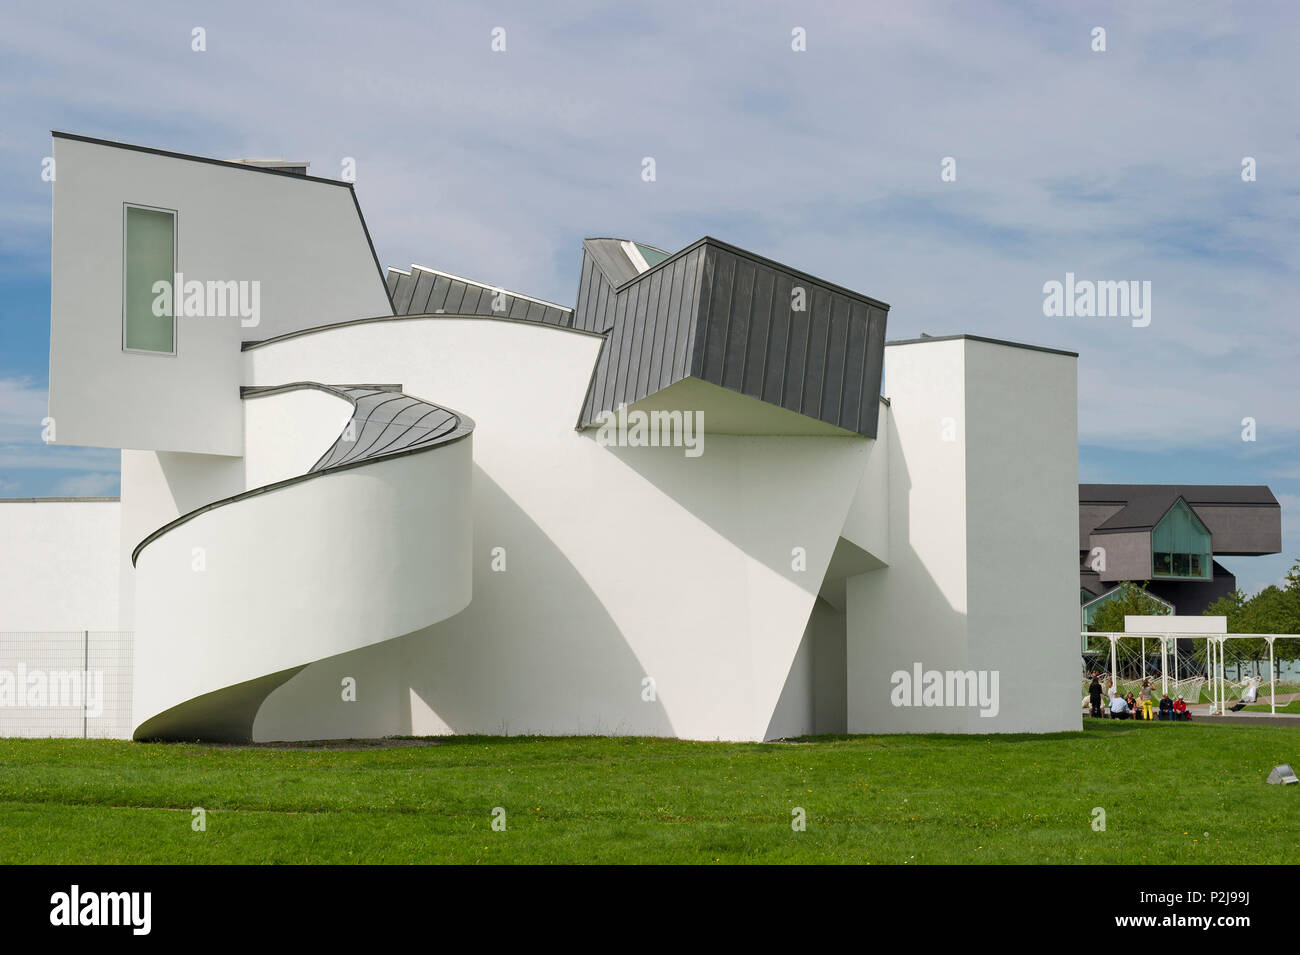 Vitra Design Museum, Architekten Frank O. Gehry, Weil am Rhein, Baden-Württemberg, Deutschland Stockfoto